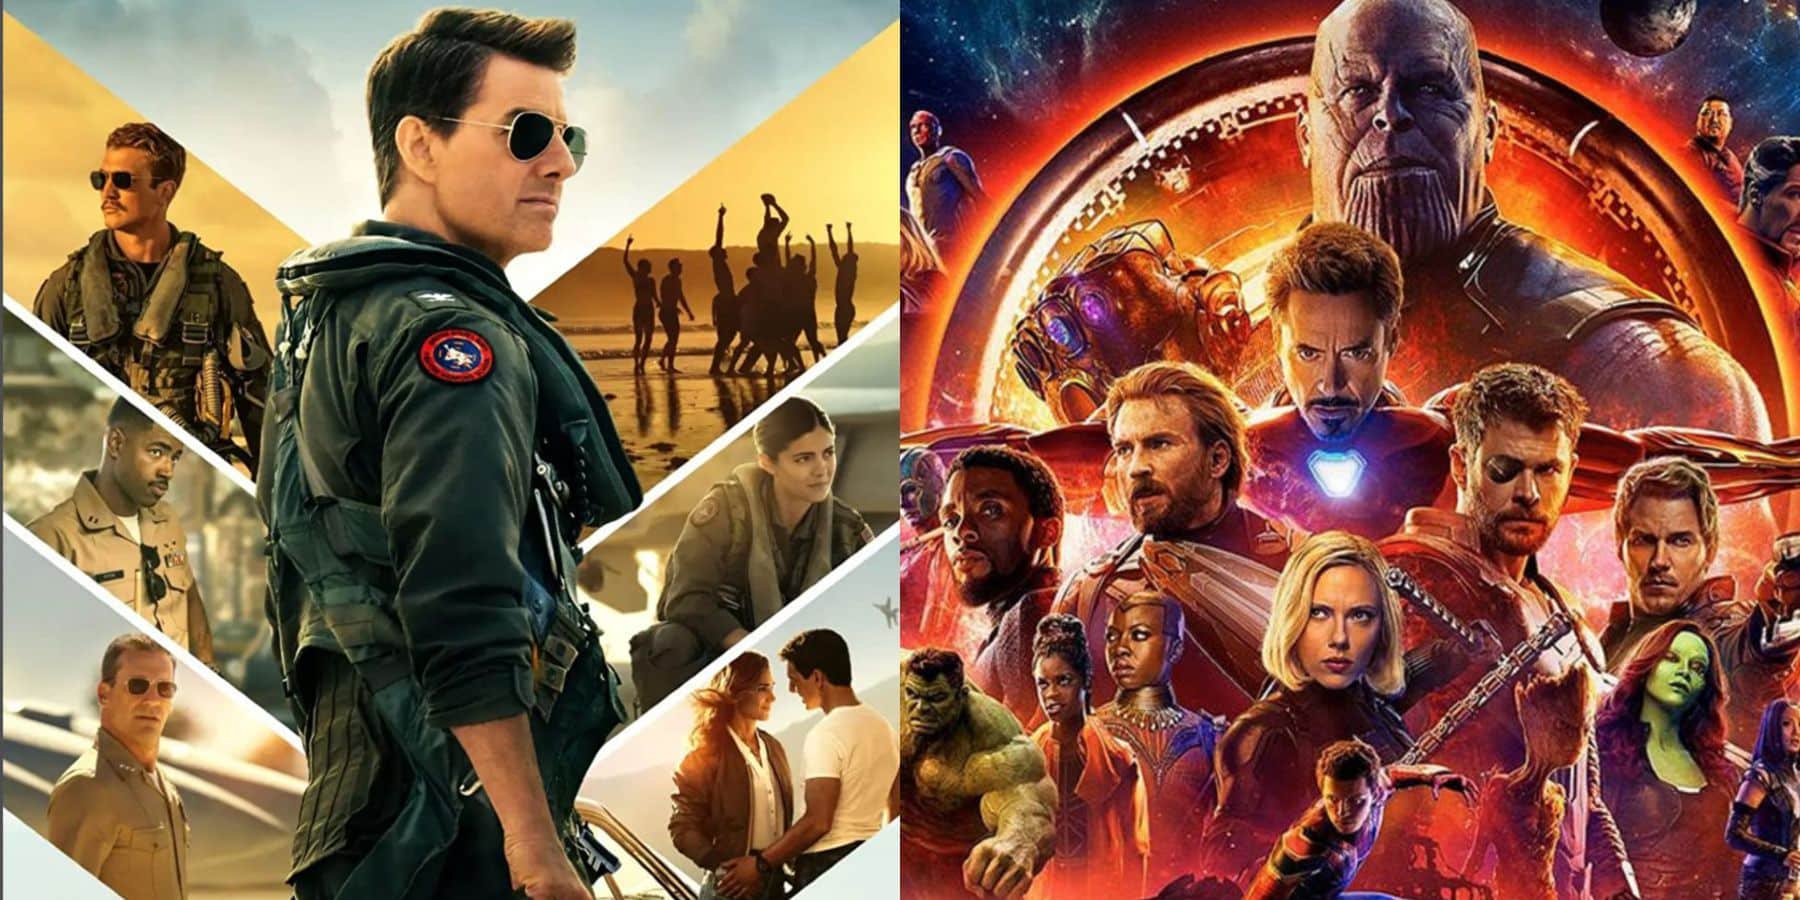 Top Gun : Maverick a dépassé Avengers : Infinity War au box-office Top Gun Maverick a depasse Avengers Infinity War